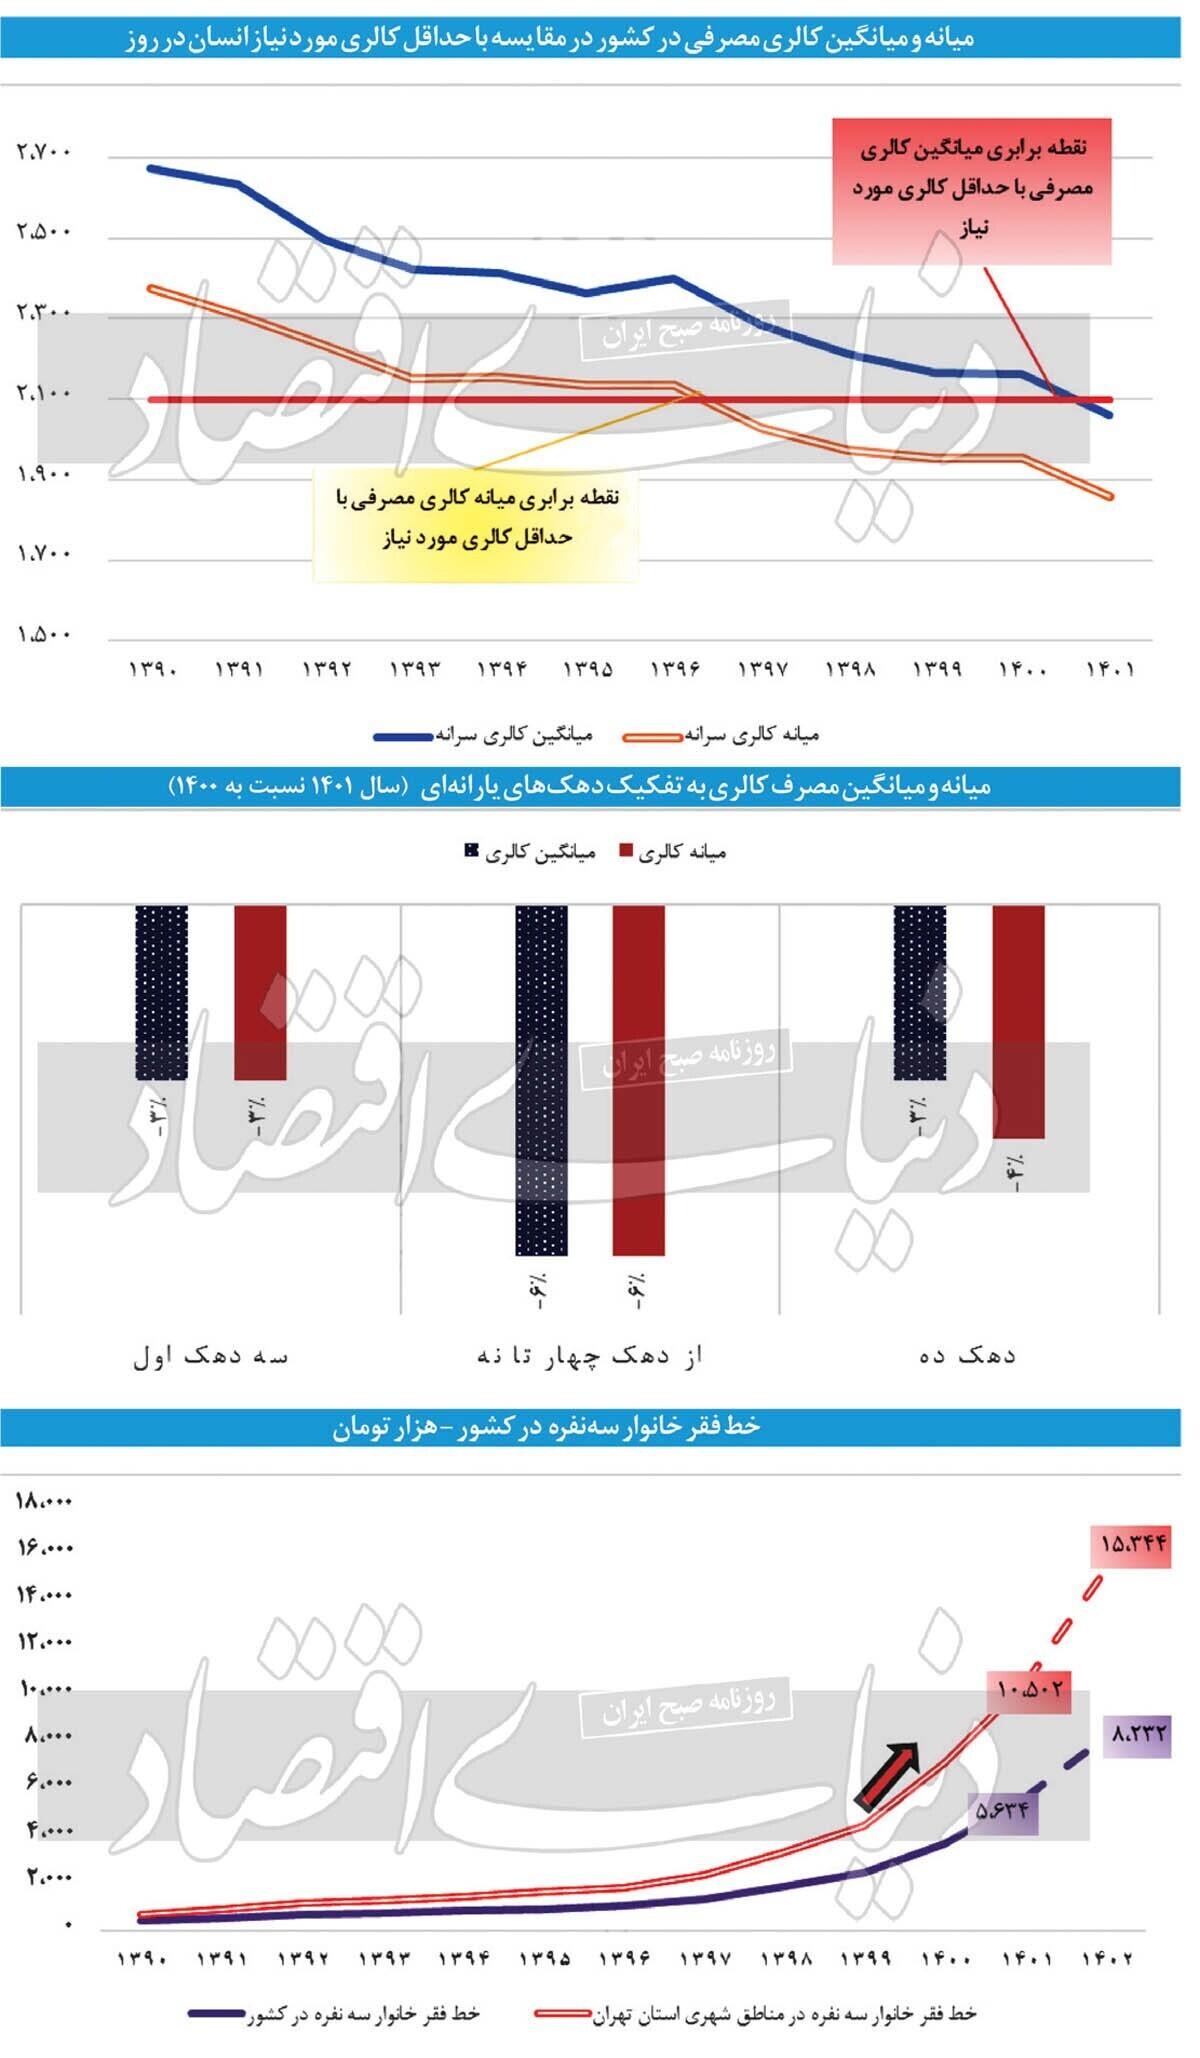 کالری مصرفی نیمی از ایرانیان در سال ۱۴۰۱ کمتر از استاندارد بوده